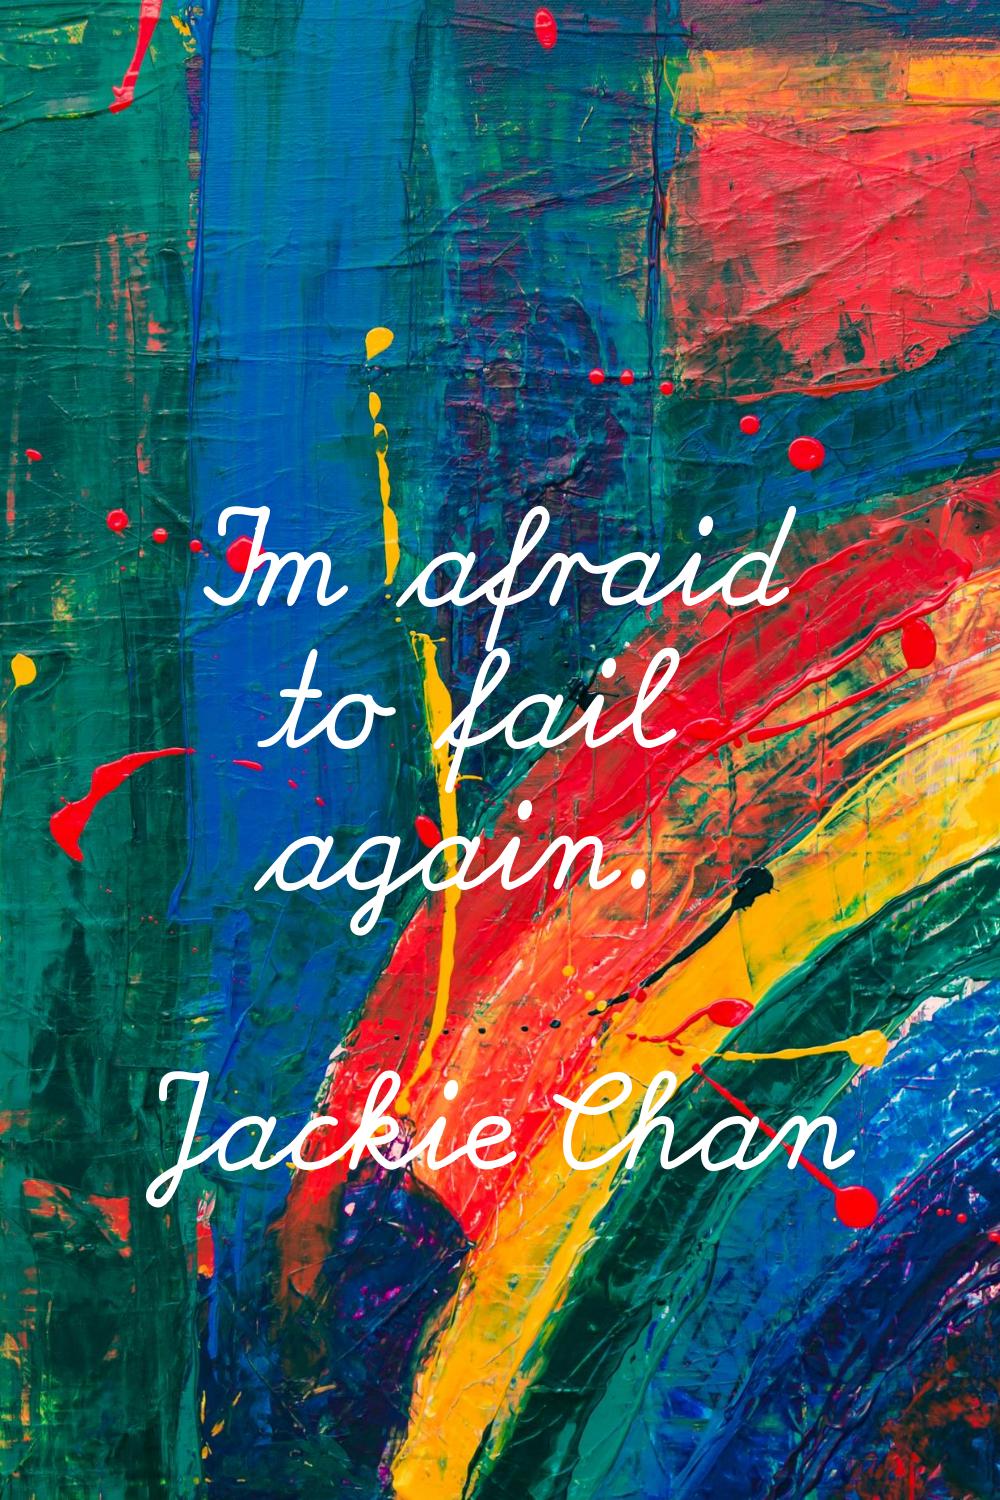 I'm afraid to fail again.